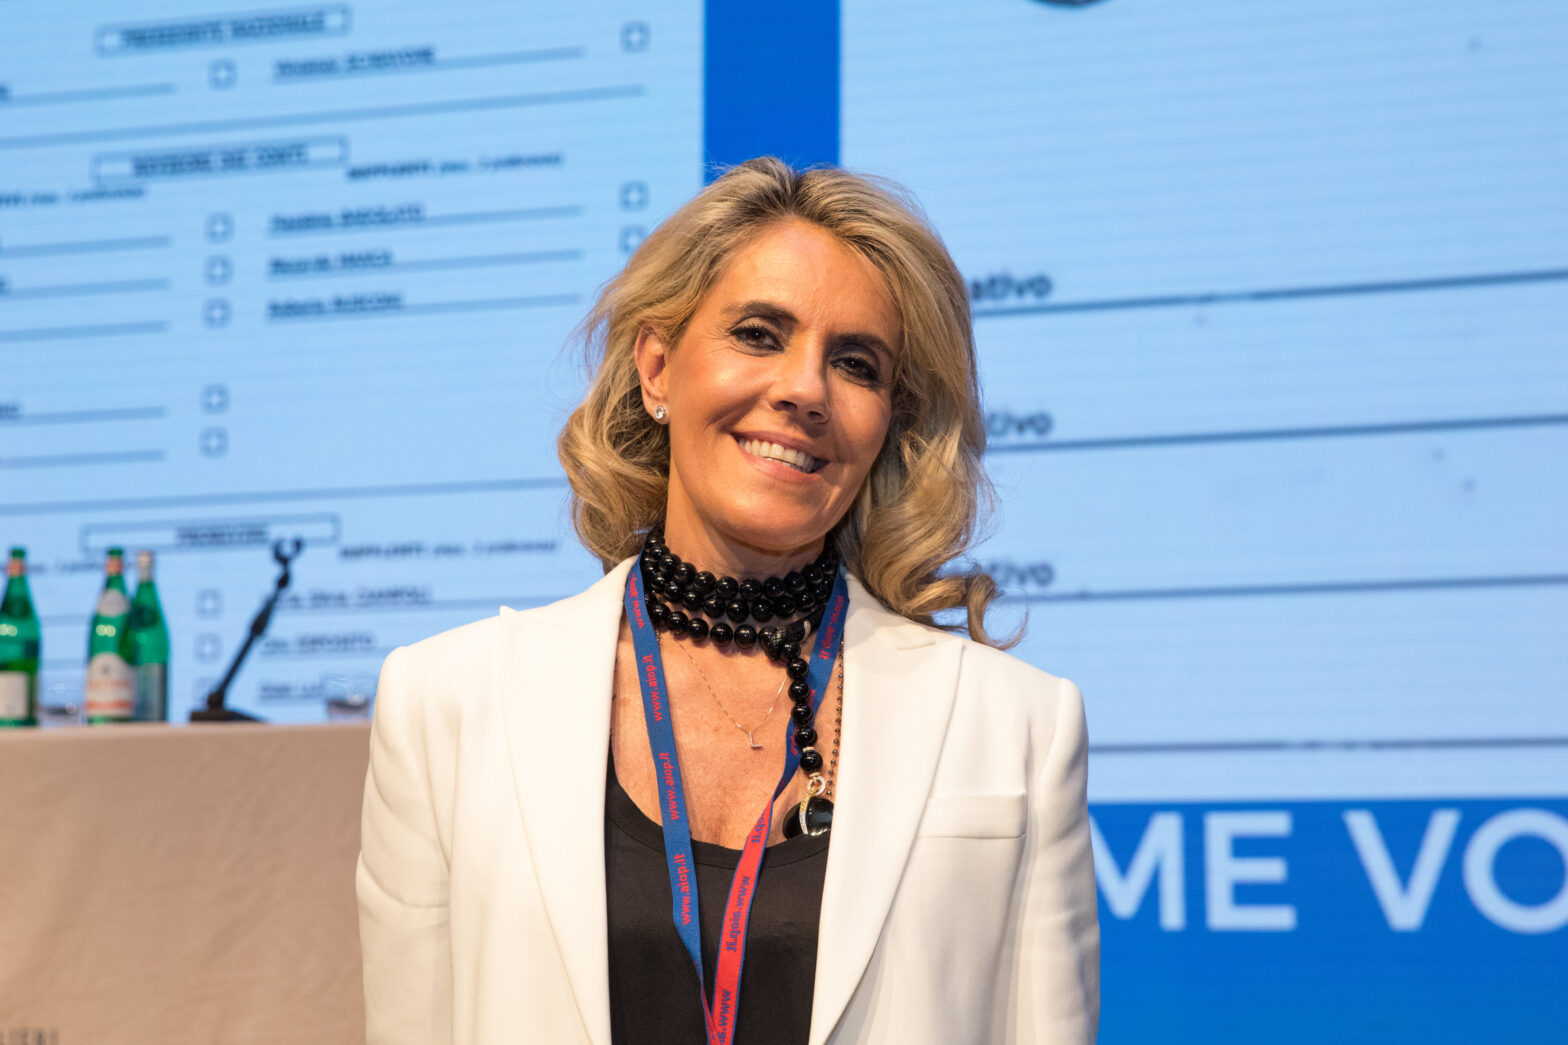 Barbara Cittadini, Presidente nazionale Aiop